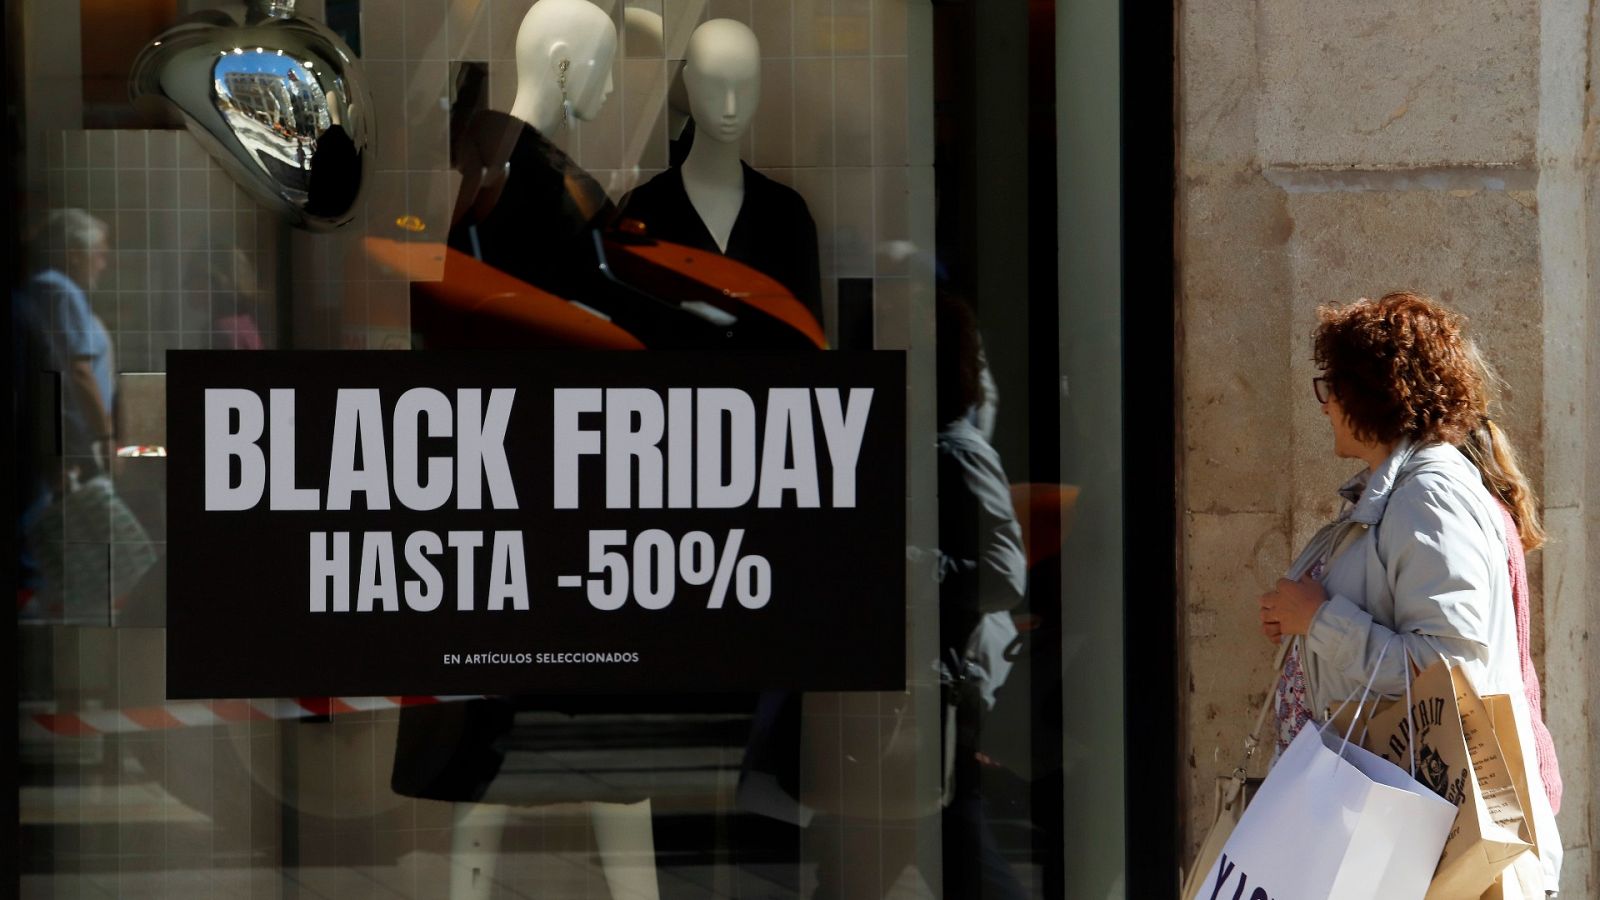 Tras el 'Black Friday' surge el 'Spanish Friday', una iniciativa apoyada por más de 500 empresas españolas que buscan fomentar el consumo de productos y servicios nacionales.